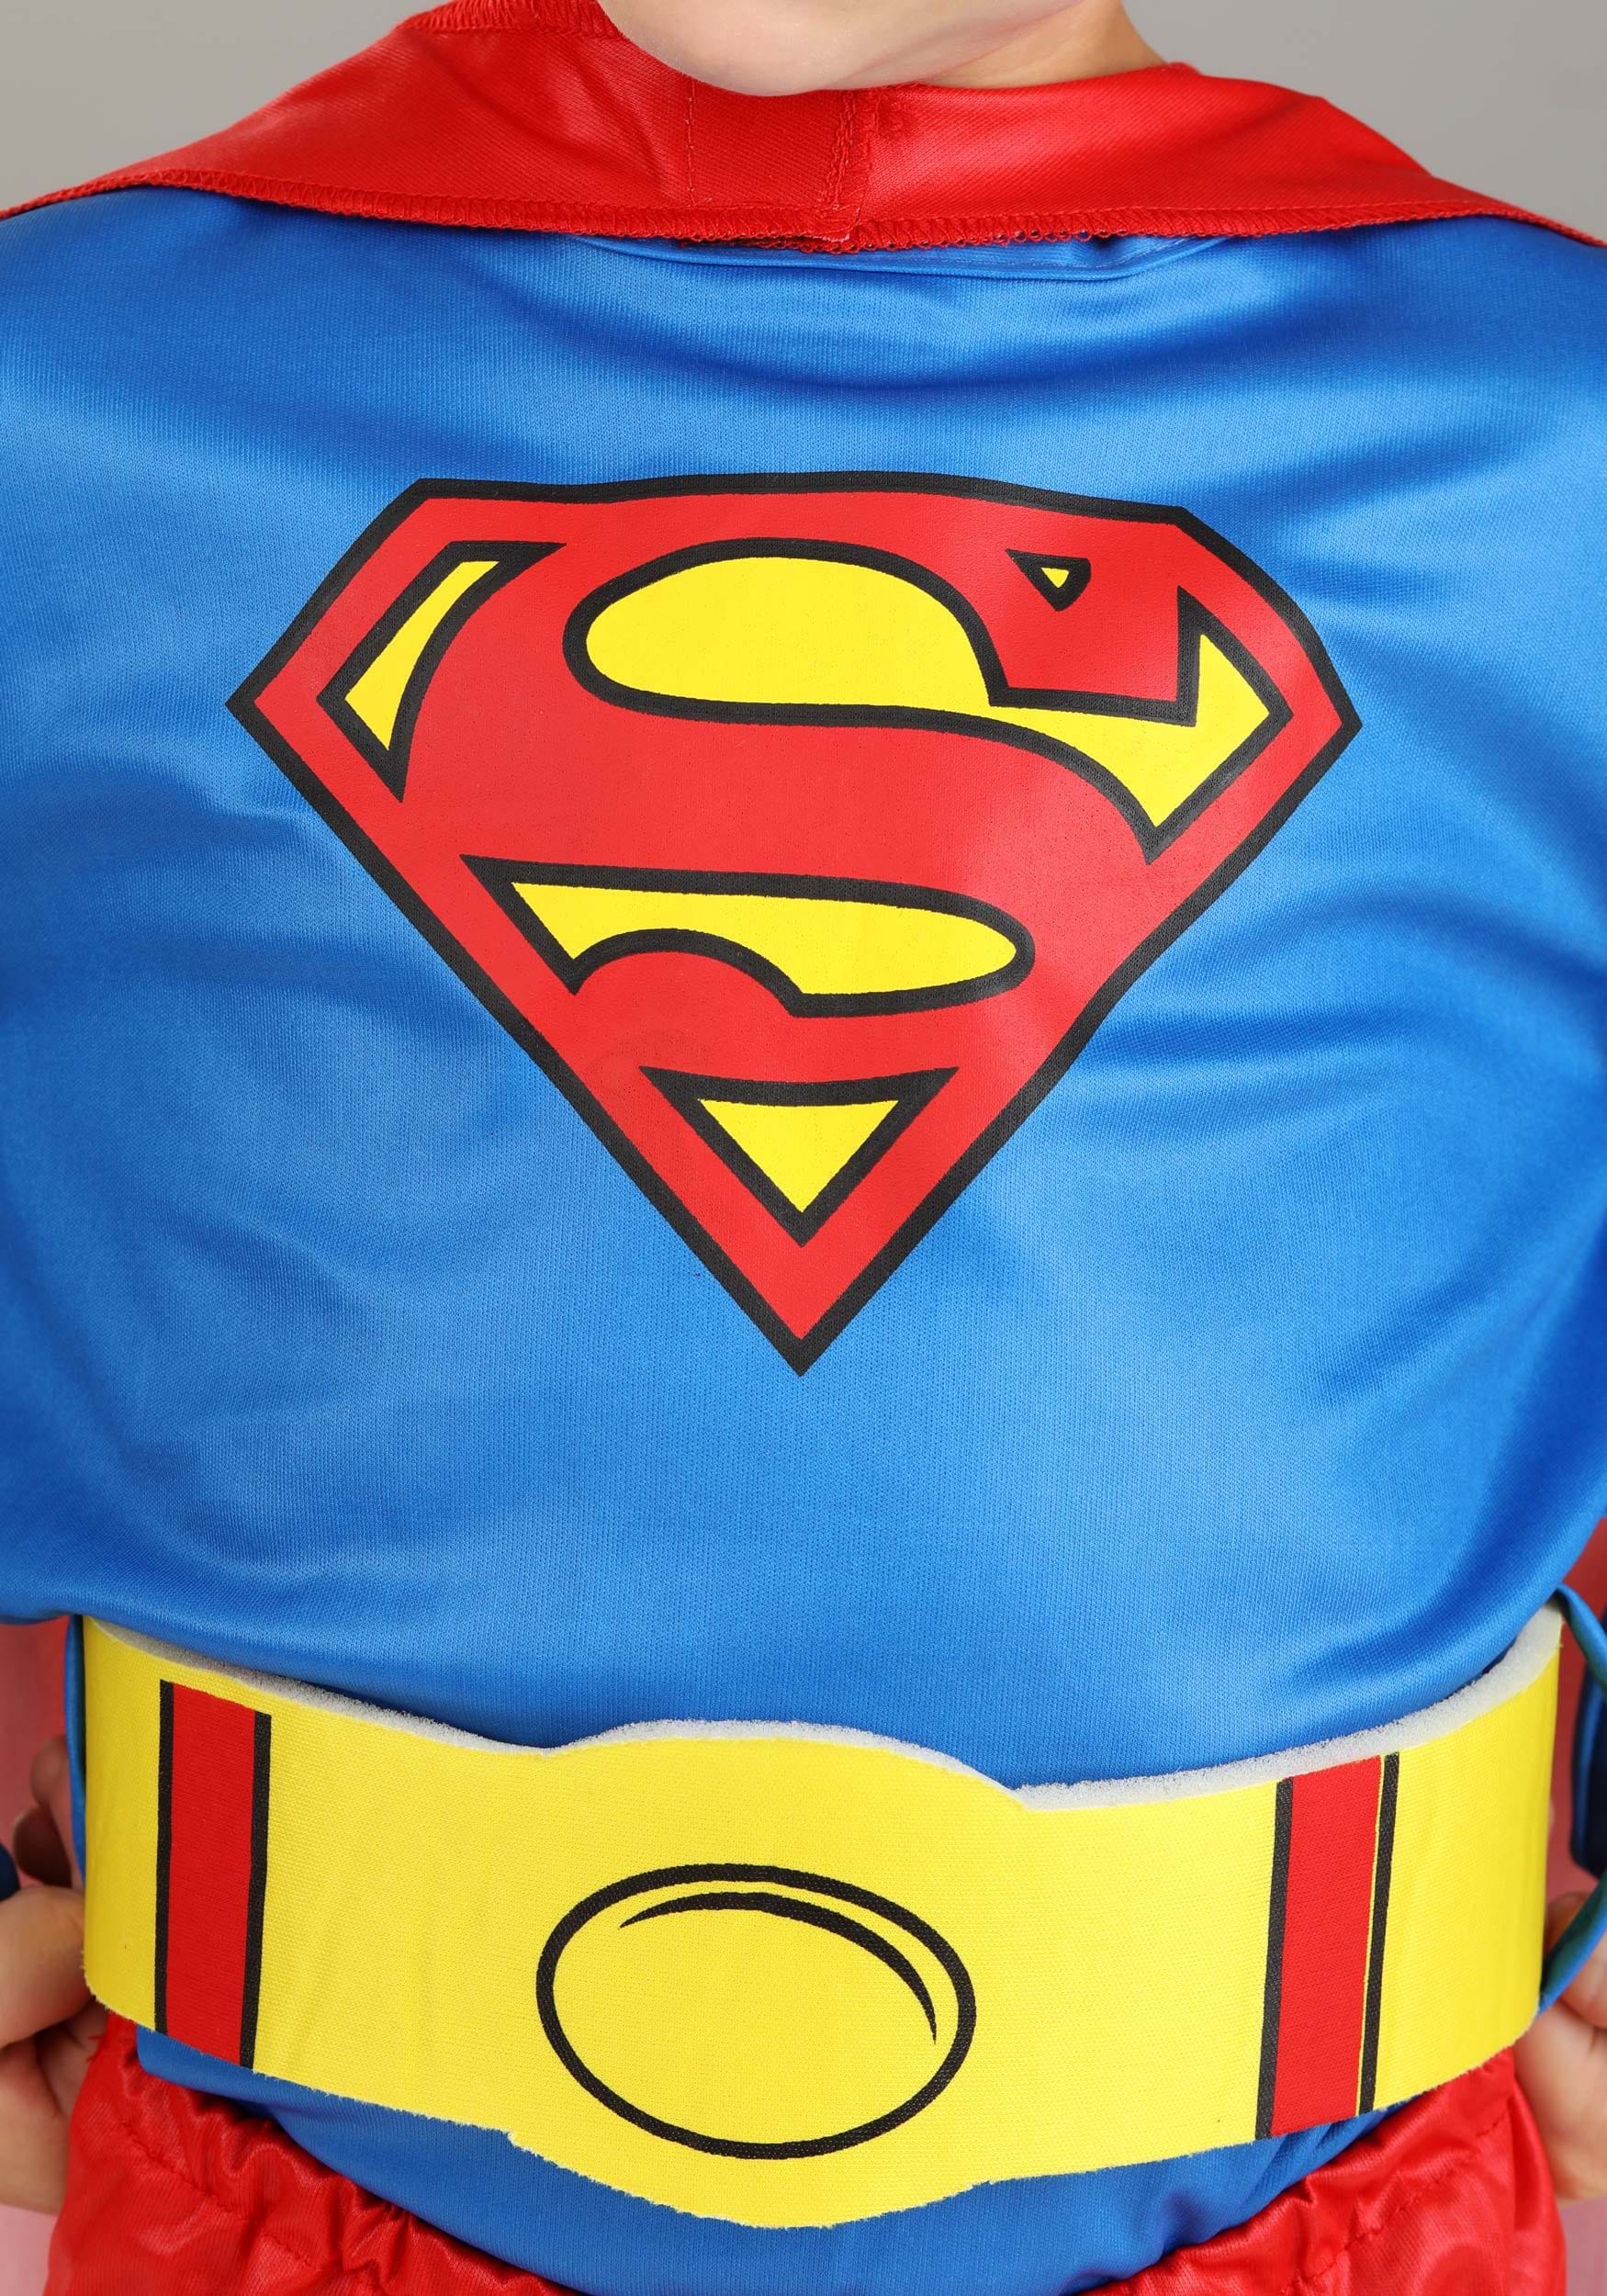 Disfraz clásico de DC Comics Superman para niños pequeños Multicolor Colombia